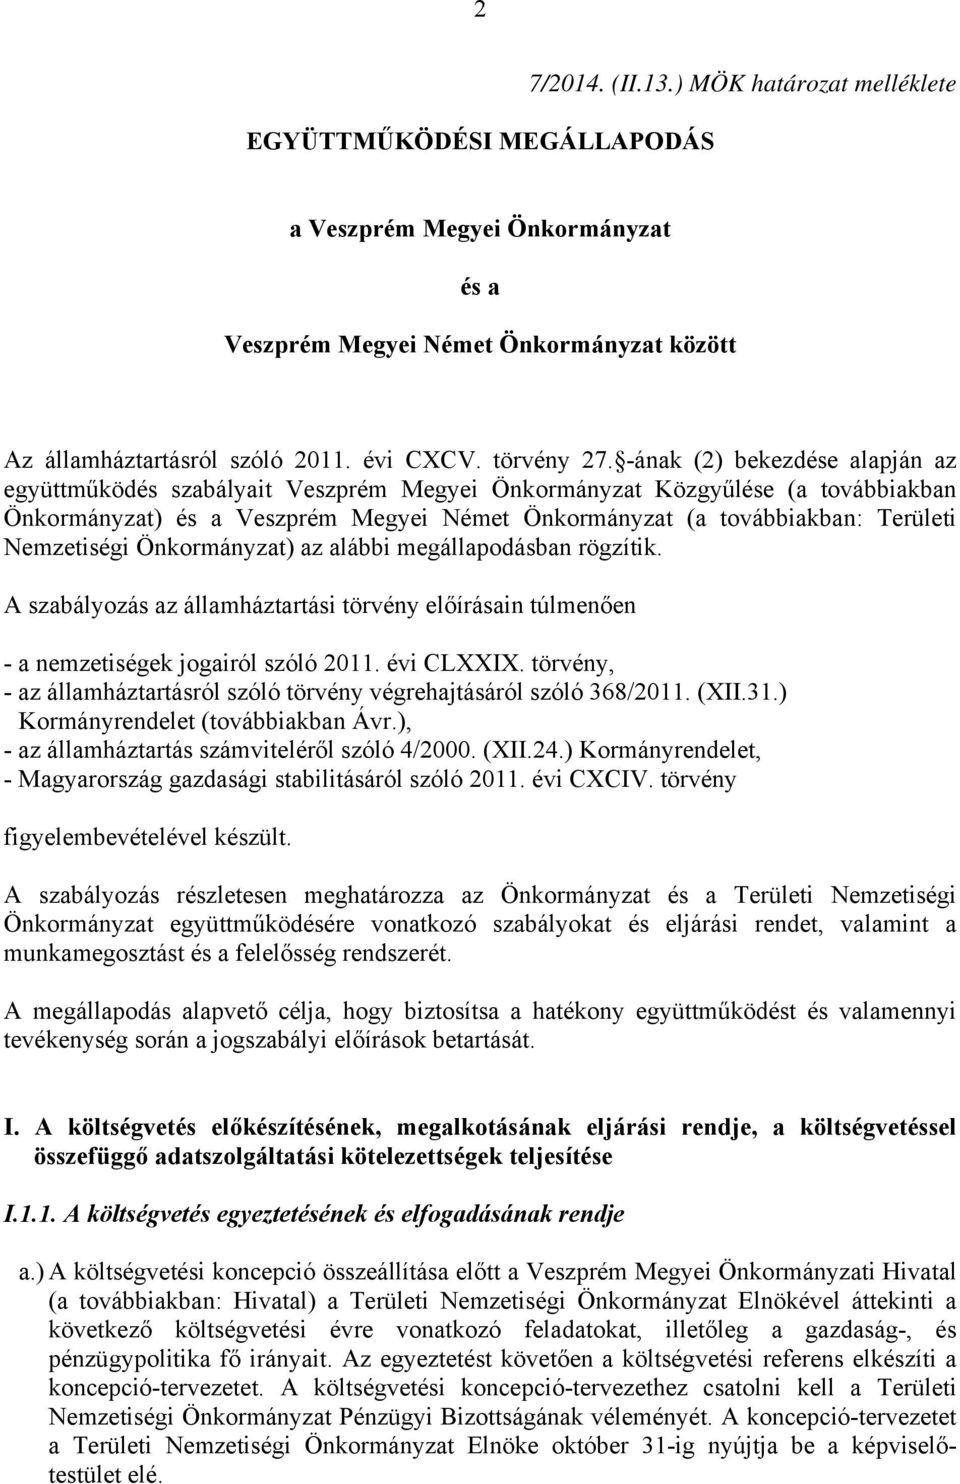 -ának (2) bekezdése alapján az együttműködés szabályait Veszprém Megyei Önkormányzat Közgyűlése (a továbbiakban Önkormányzat) és a Veszprém Megyei Német Önkormányzat (a továbbiakban: Területi